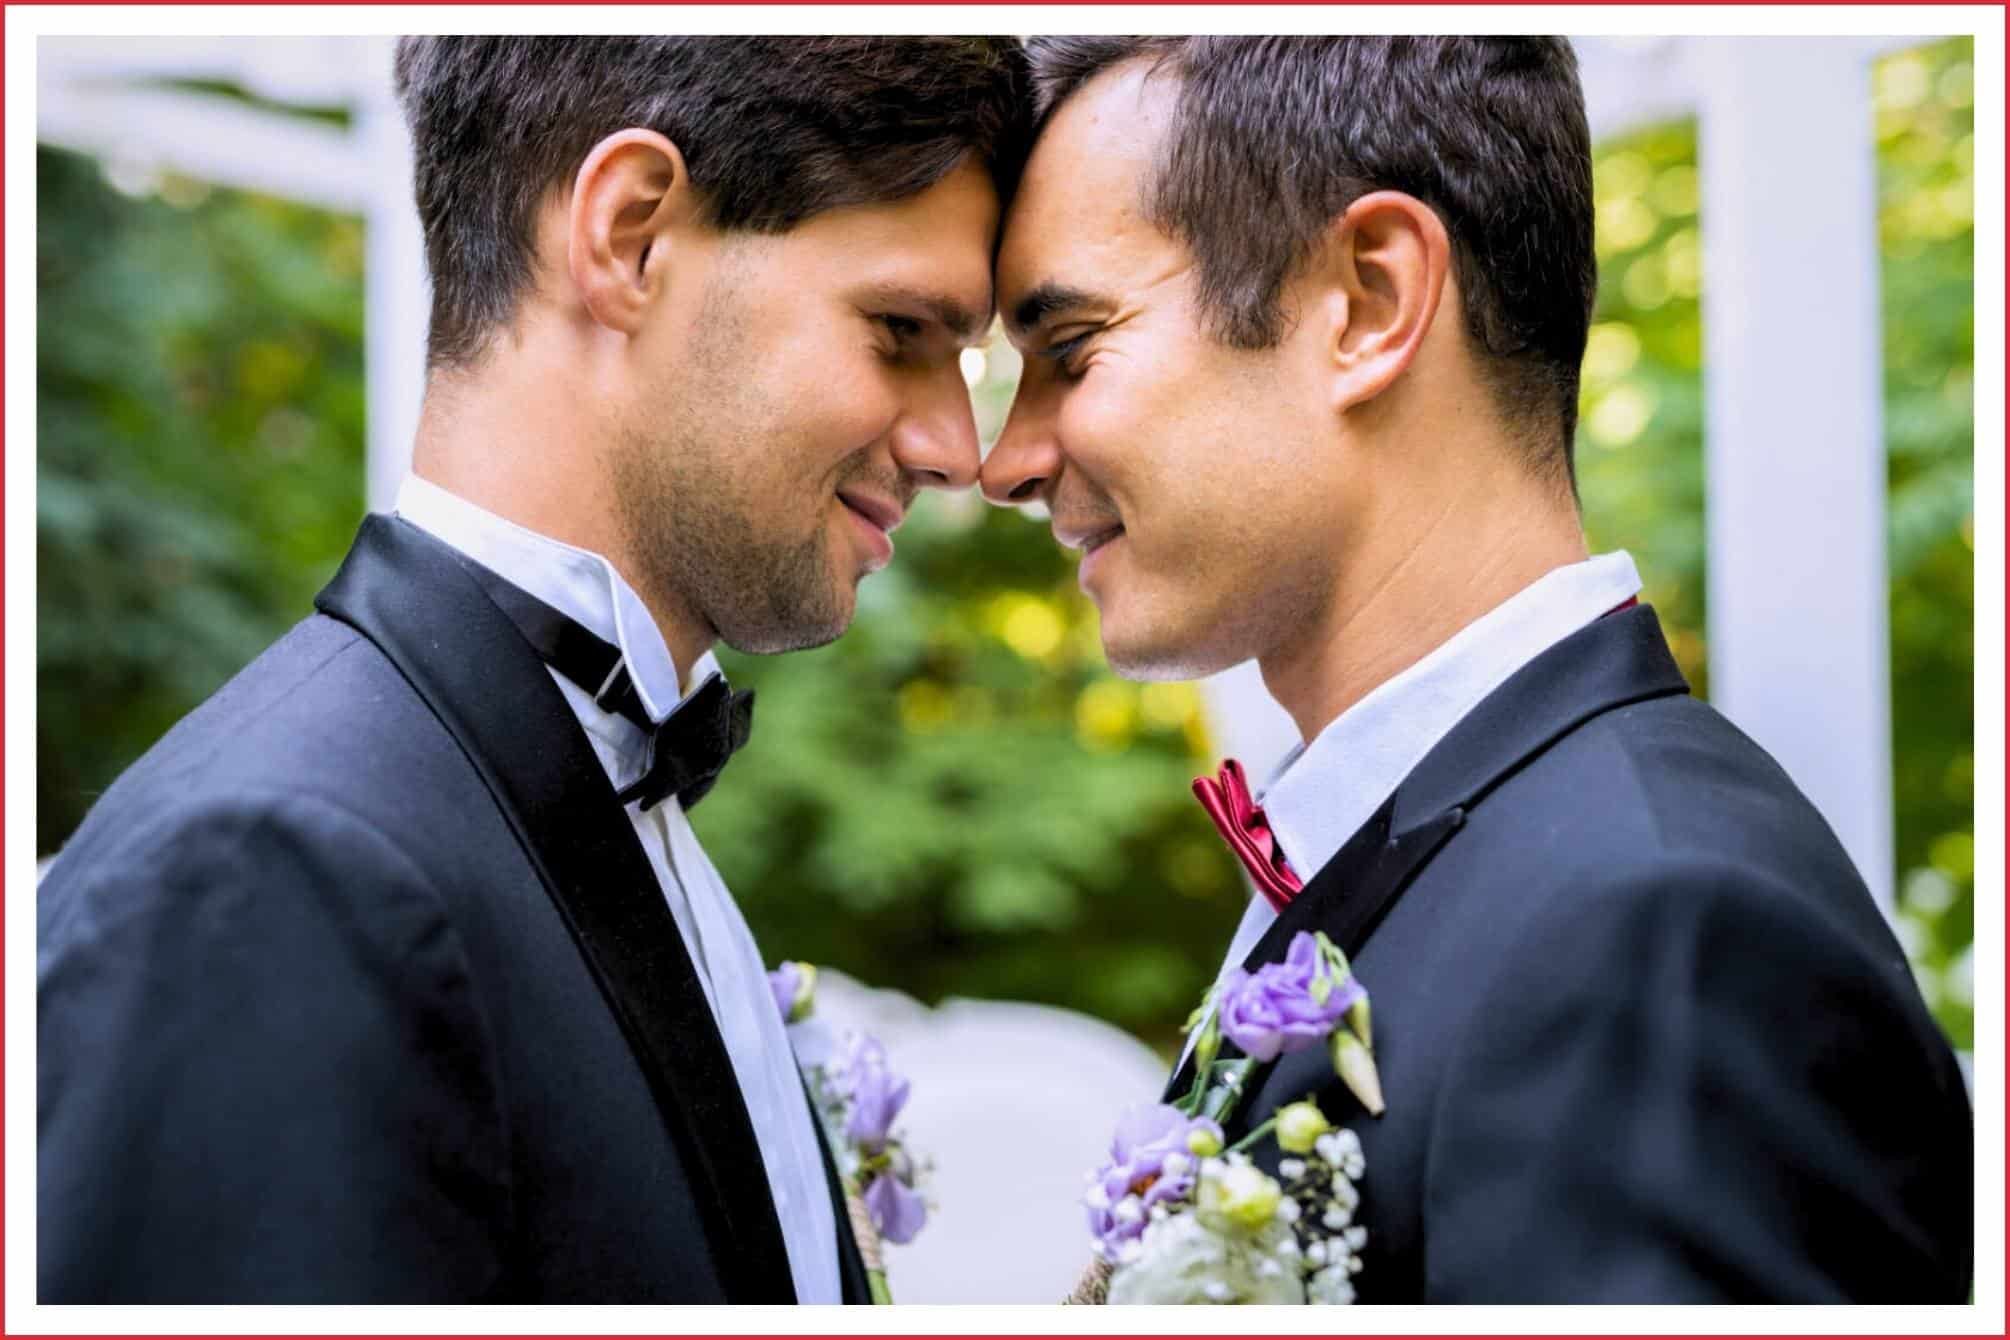 Eine Trauung fÃ¼r gleichgeschlechtliche Paare. Zwei MÃ¤nner geben sich das Ja-Wort bei der freien Trauung.